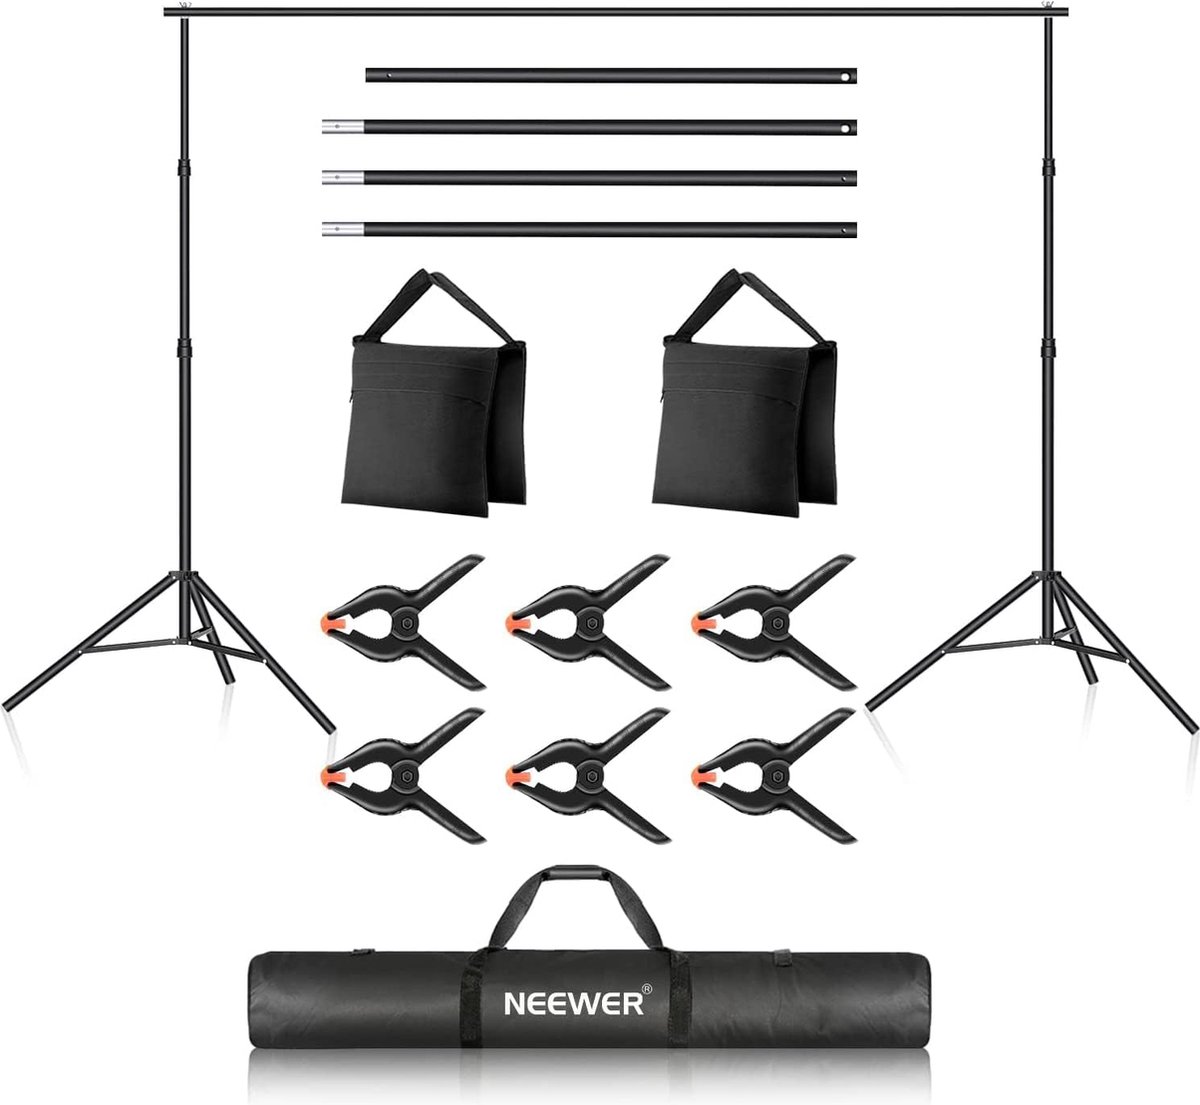 Neewer® - Achtergrondsteun Systeem voor fotostudio's - 2 x 3 m - Verstelbare AchtergrondstanDaard met 4 Dwarsbalken - 6 Achtergrondklem men - 2 Zandzakken en Draagtas voor Portret- en Studiofotografie